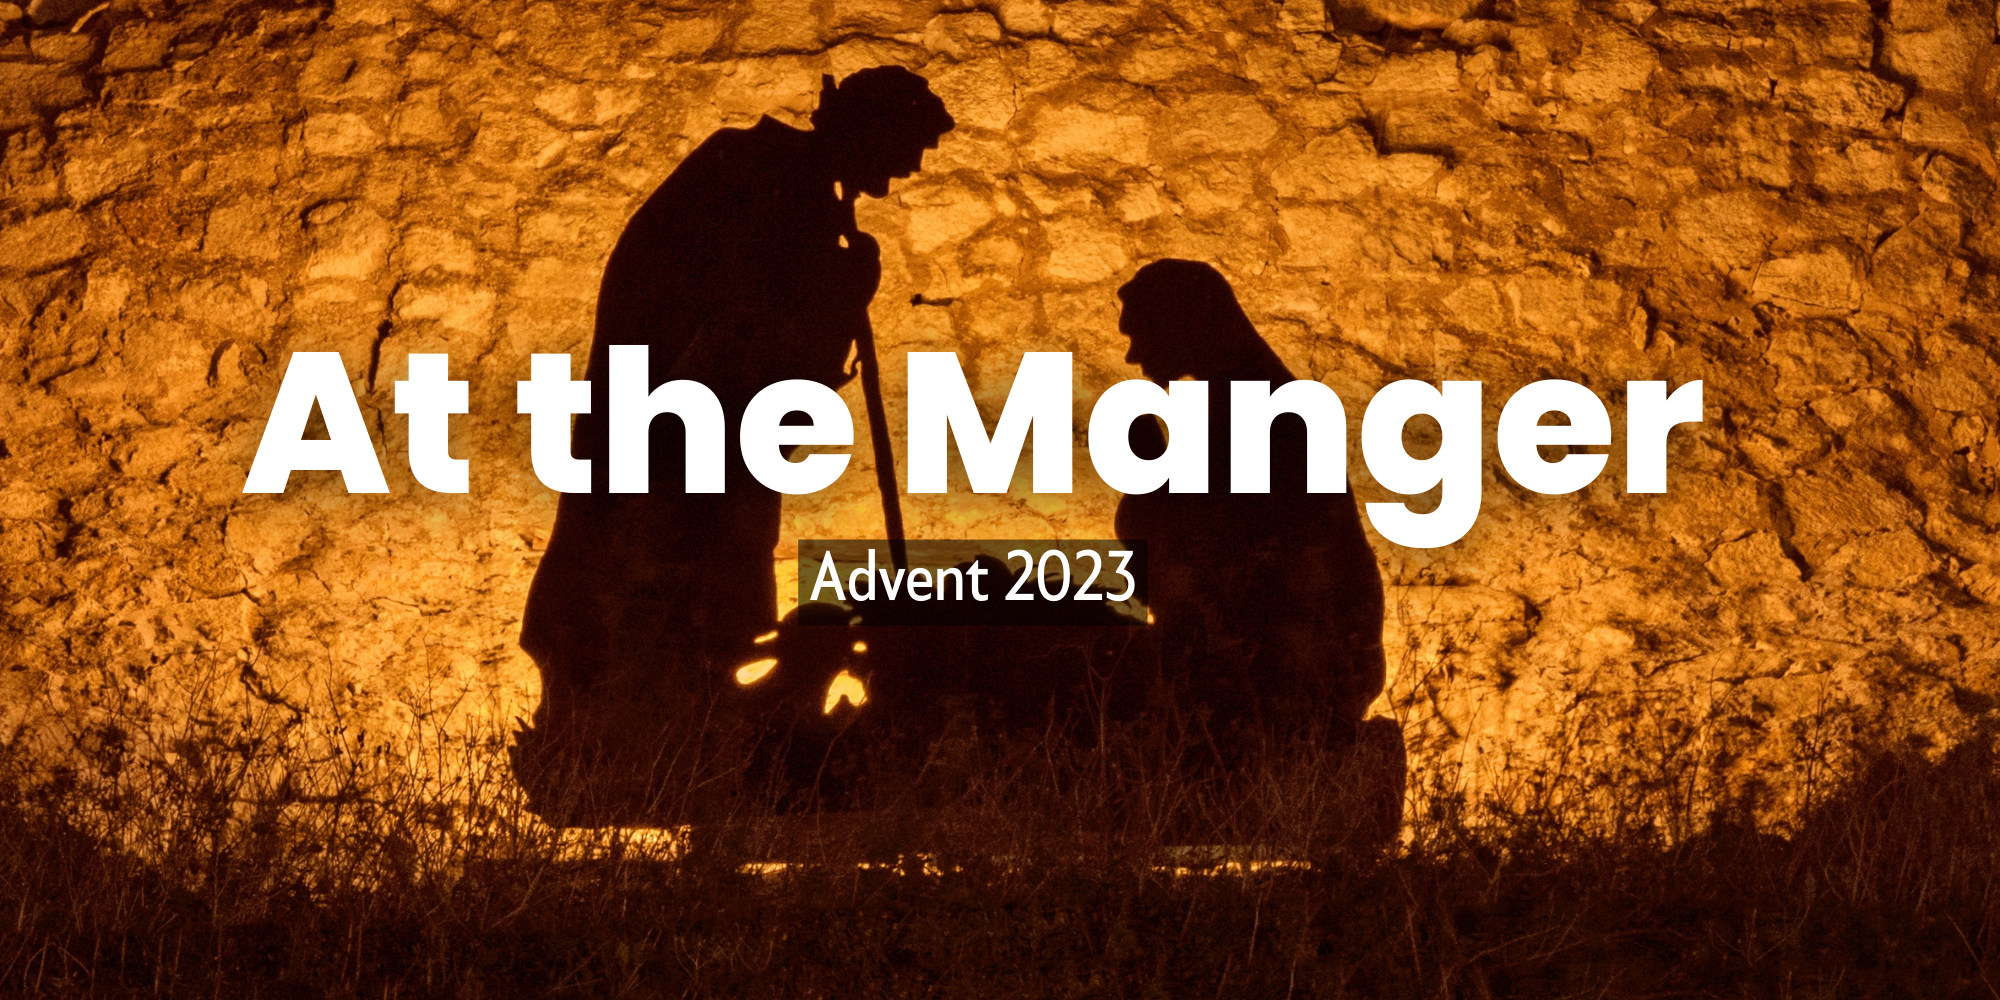 At The Manger: Joseph